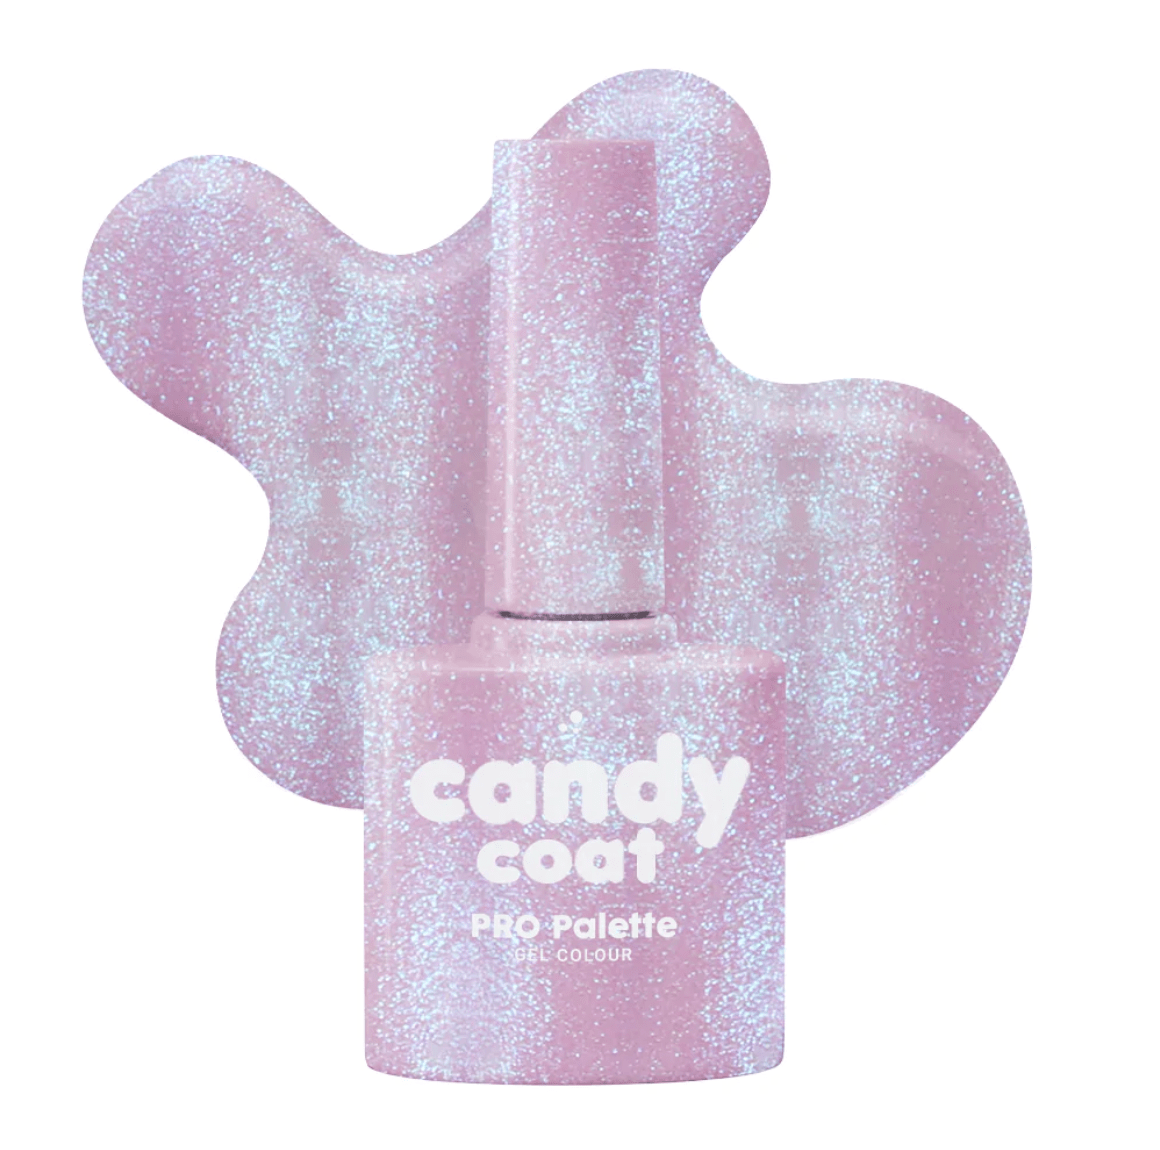 Candy Coat PRO Palette 1267 Ellie